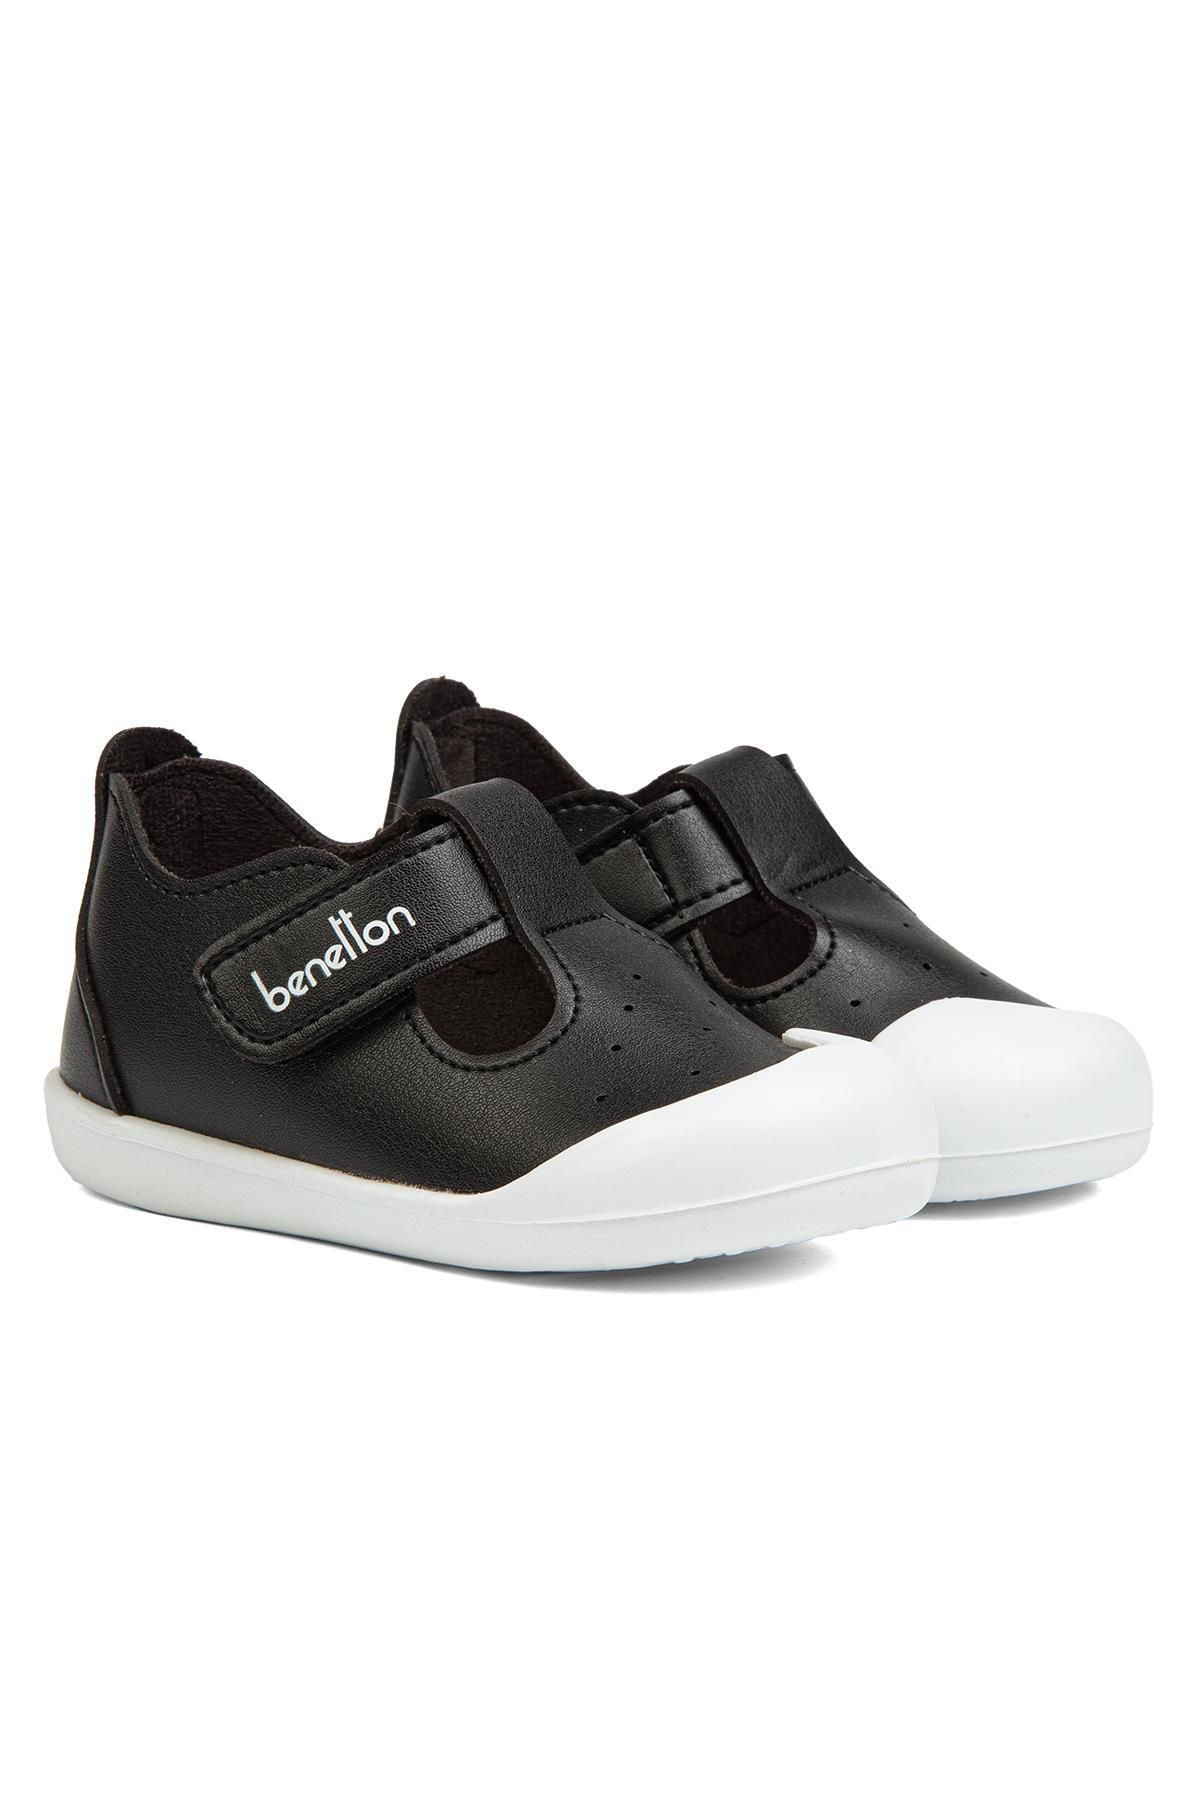 Benetton ® | BN-1250- Siyah - Çocuk Spor Ayakkabı